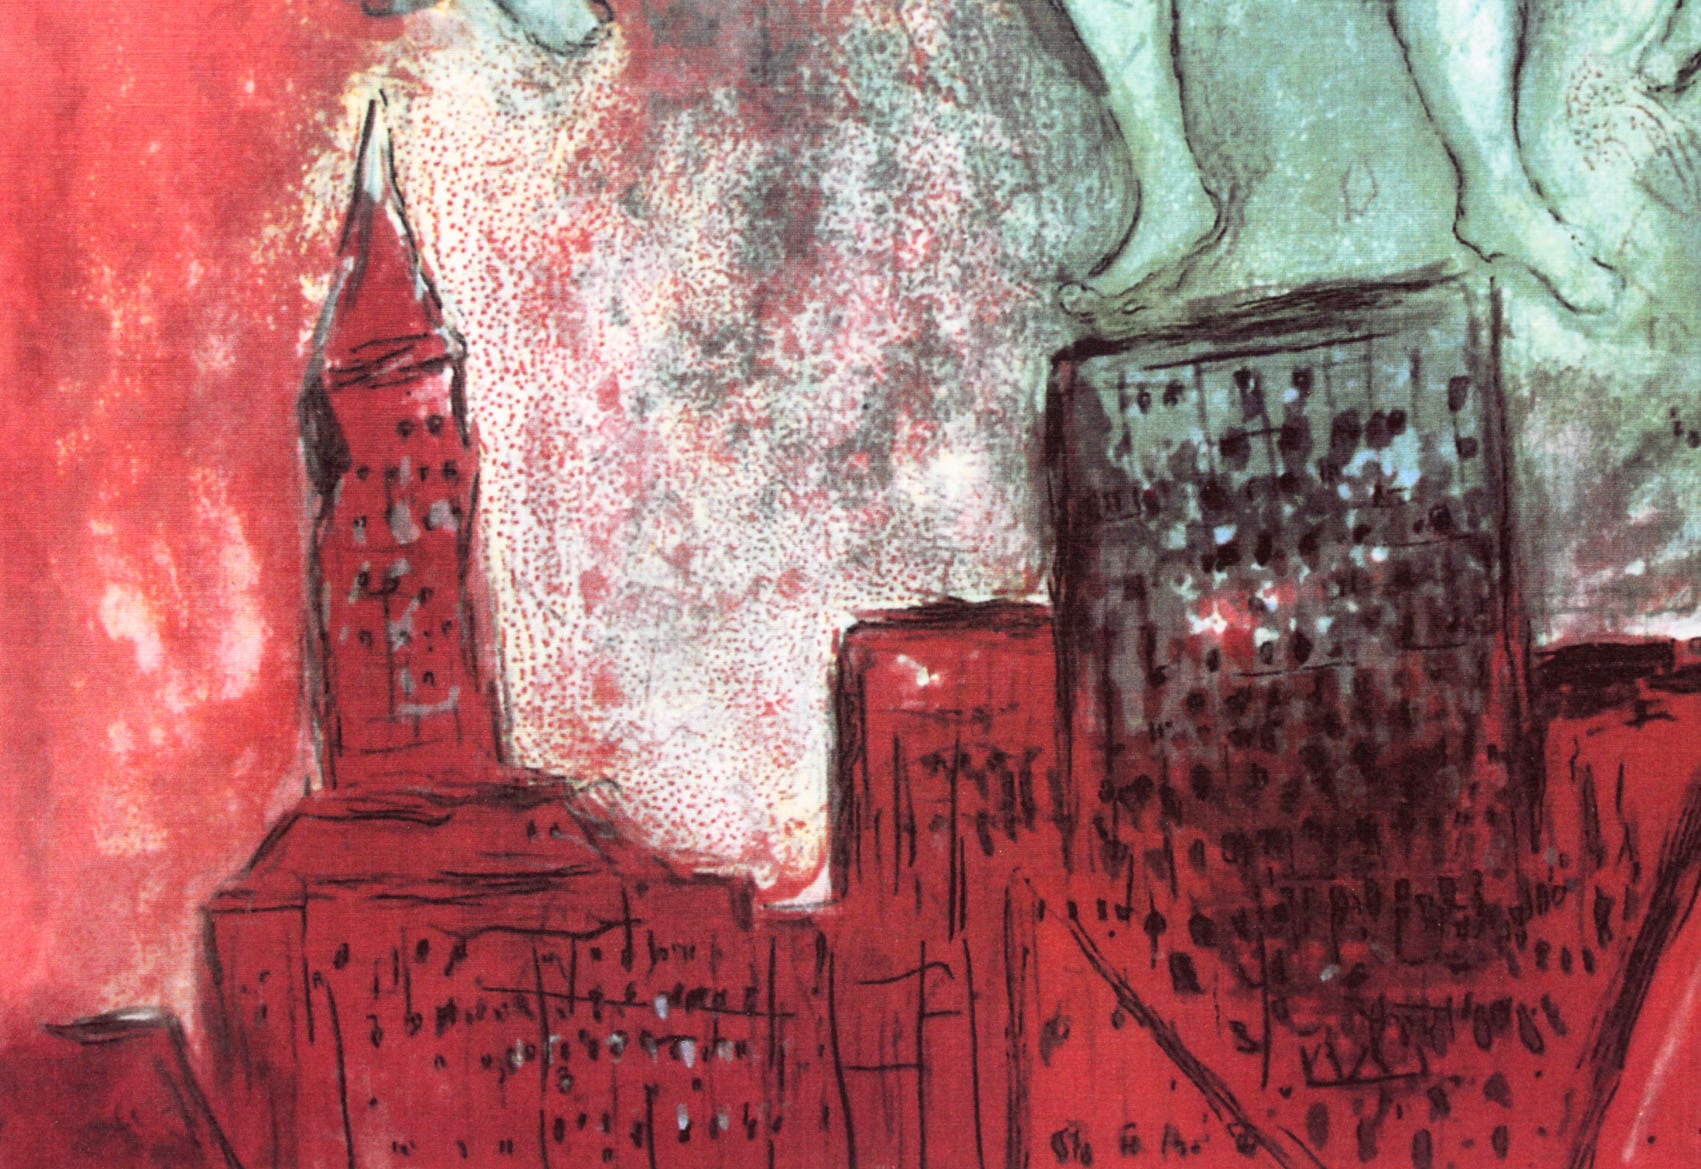 マルク・シャガール作品「カルメン」作品証明書・展示用フック・限定500部エディション付複製画リトグラ